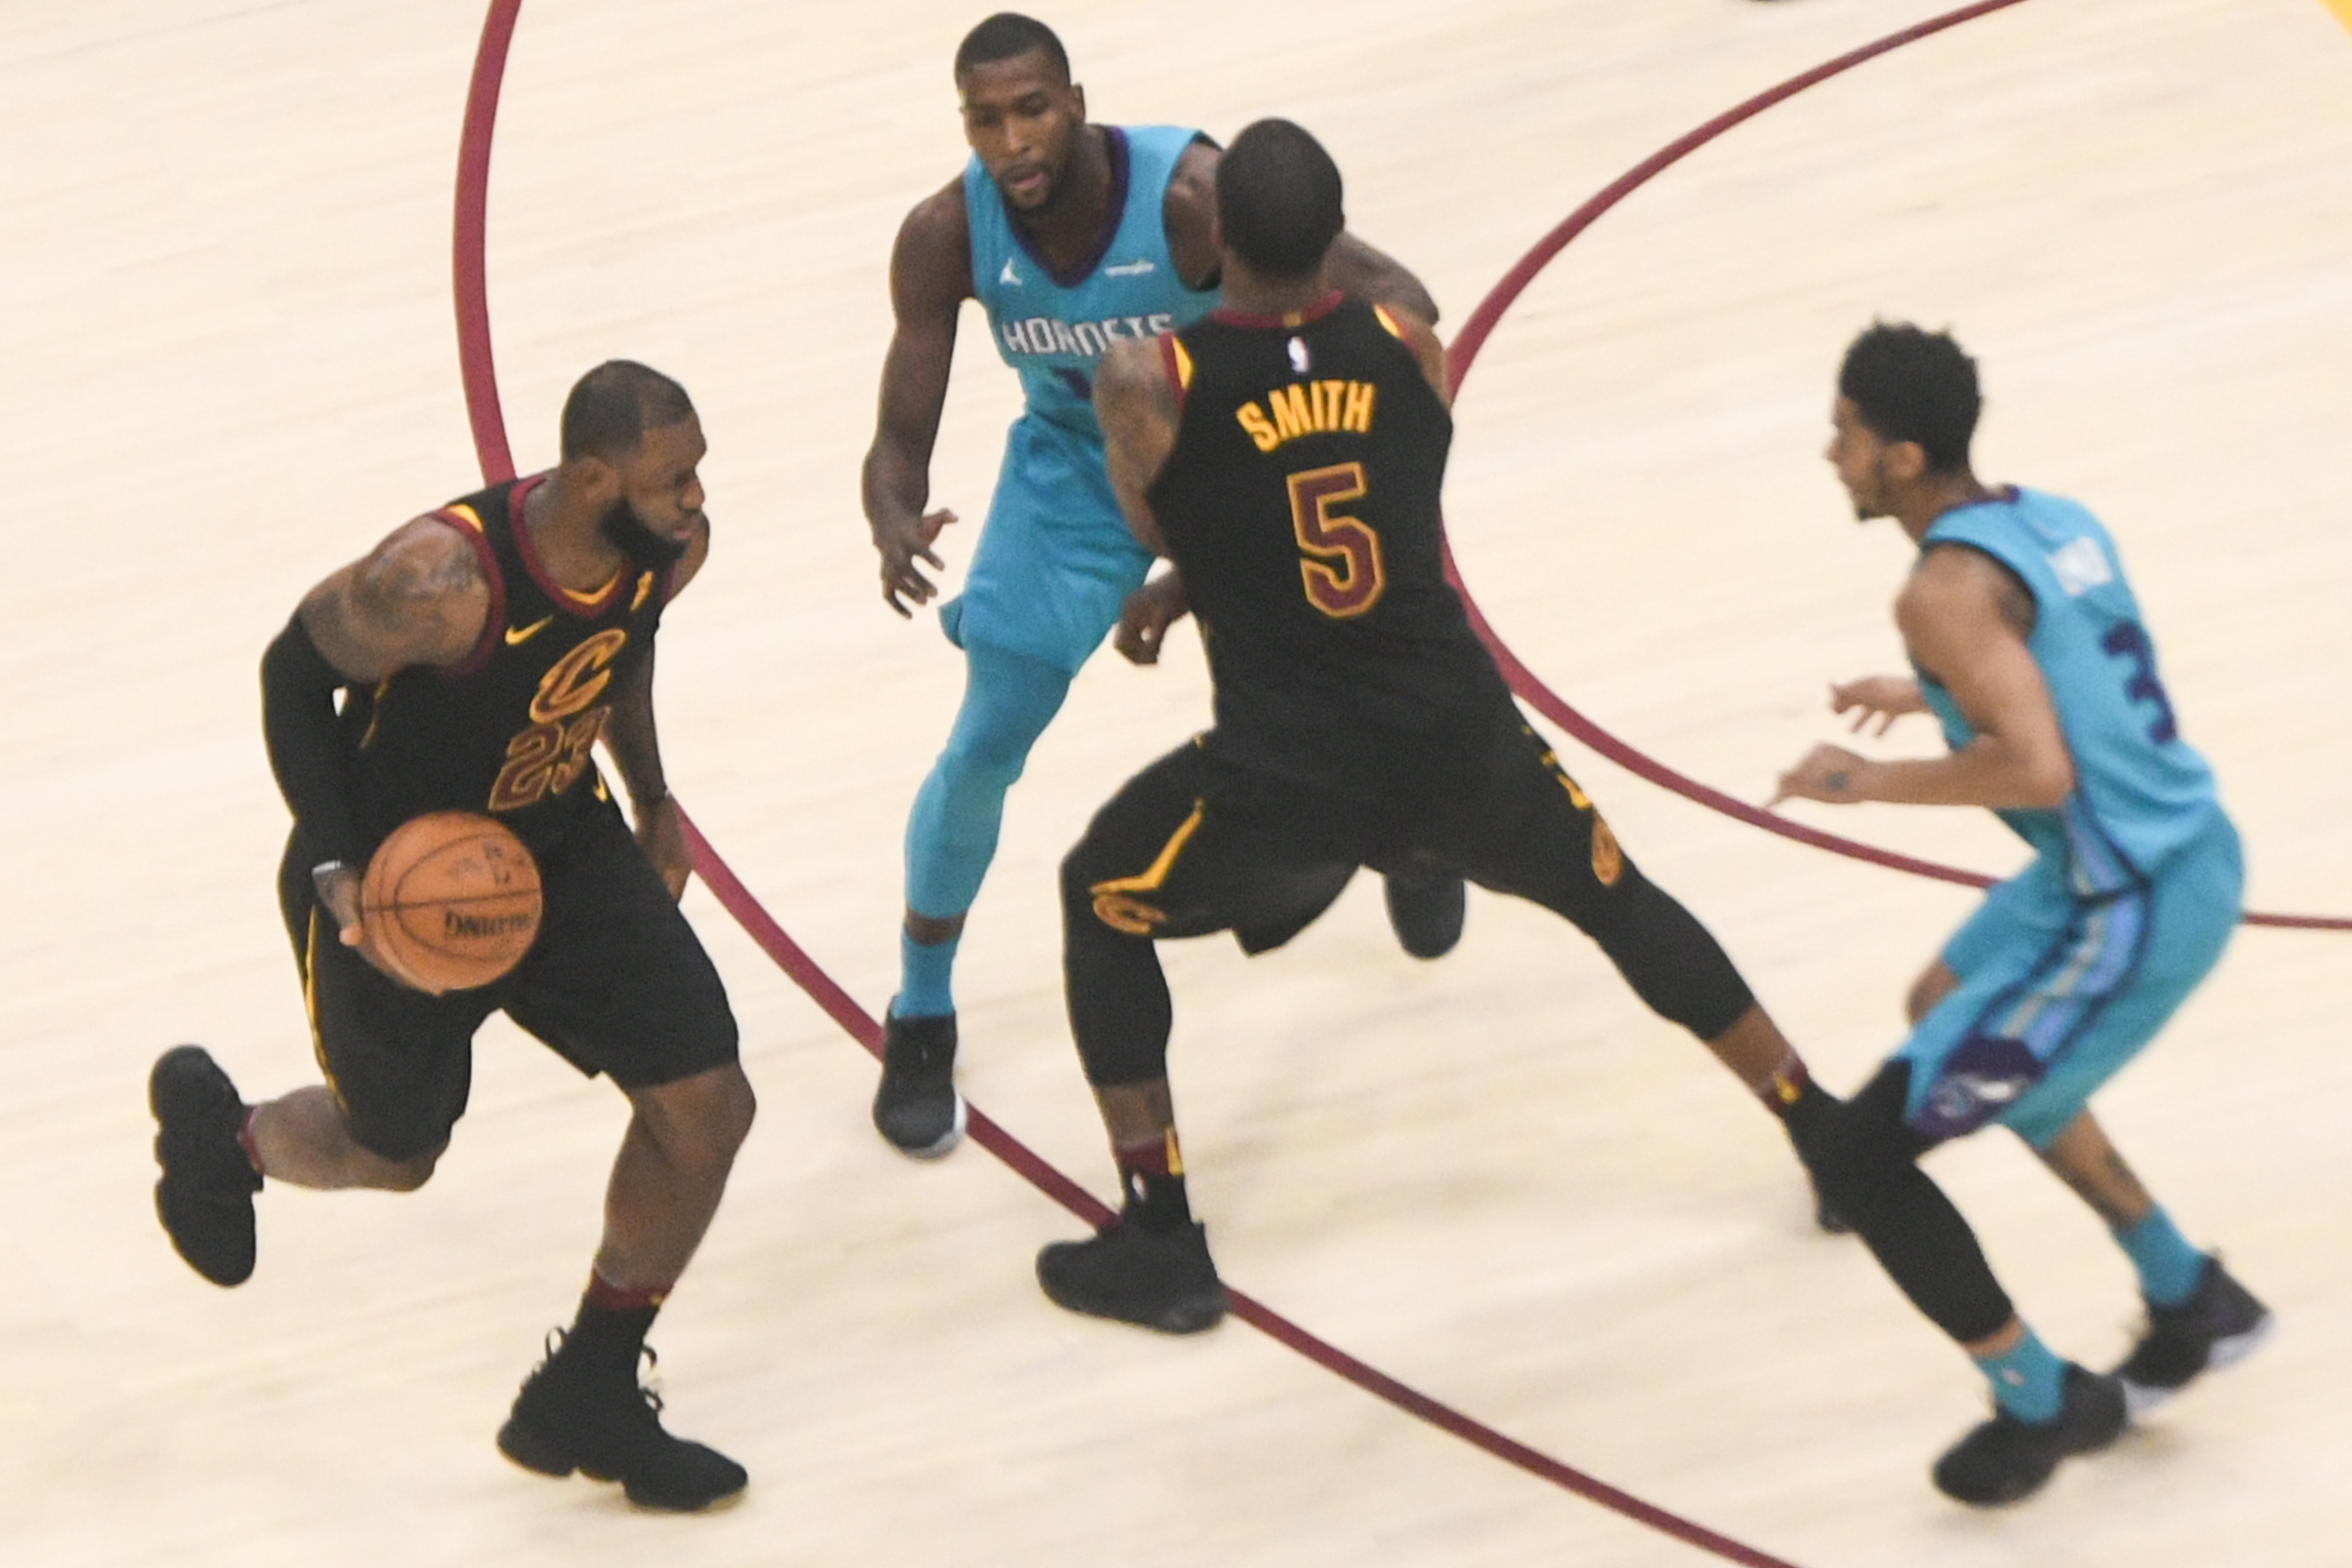 Una fotografía muestra a LeBron James regateando una pelota de baloncesto durante un juego de baloncesto